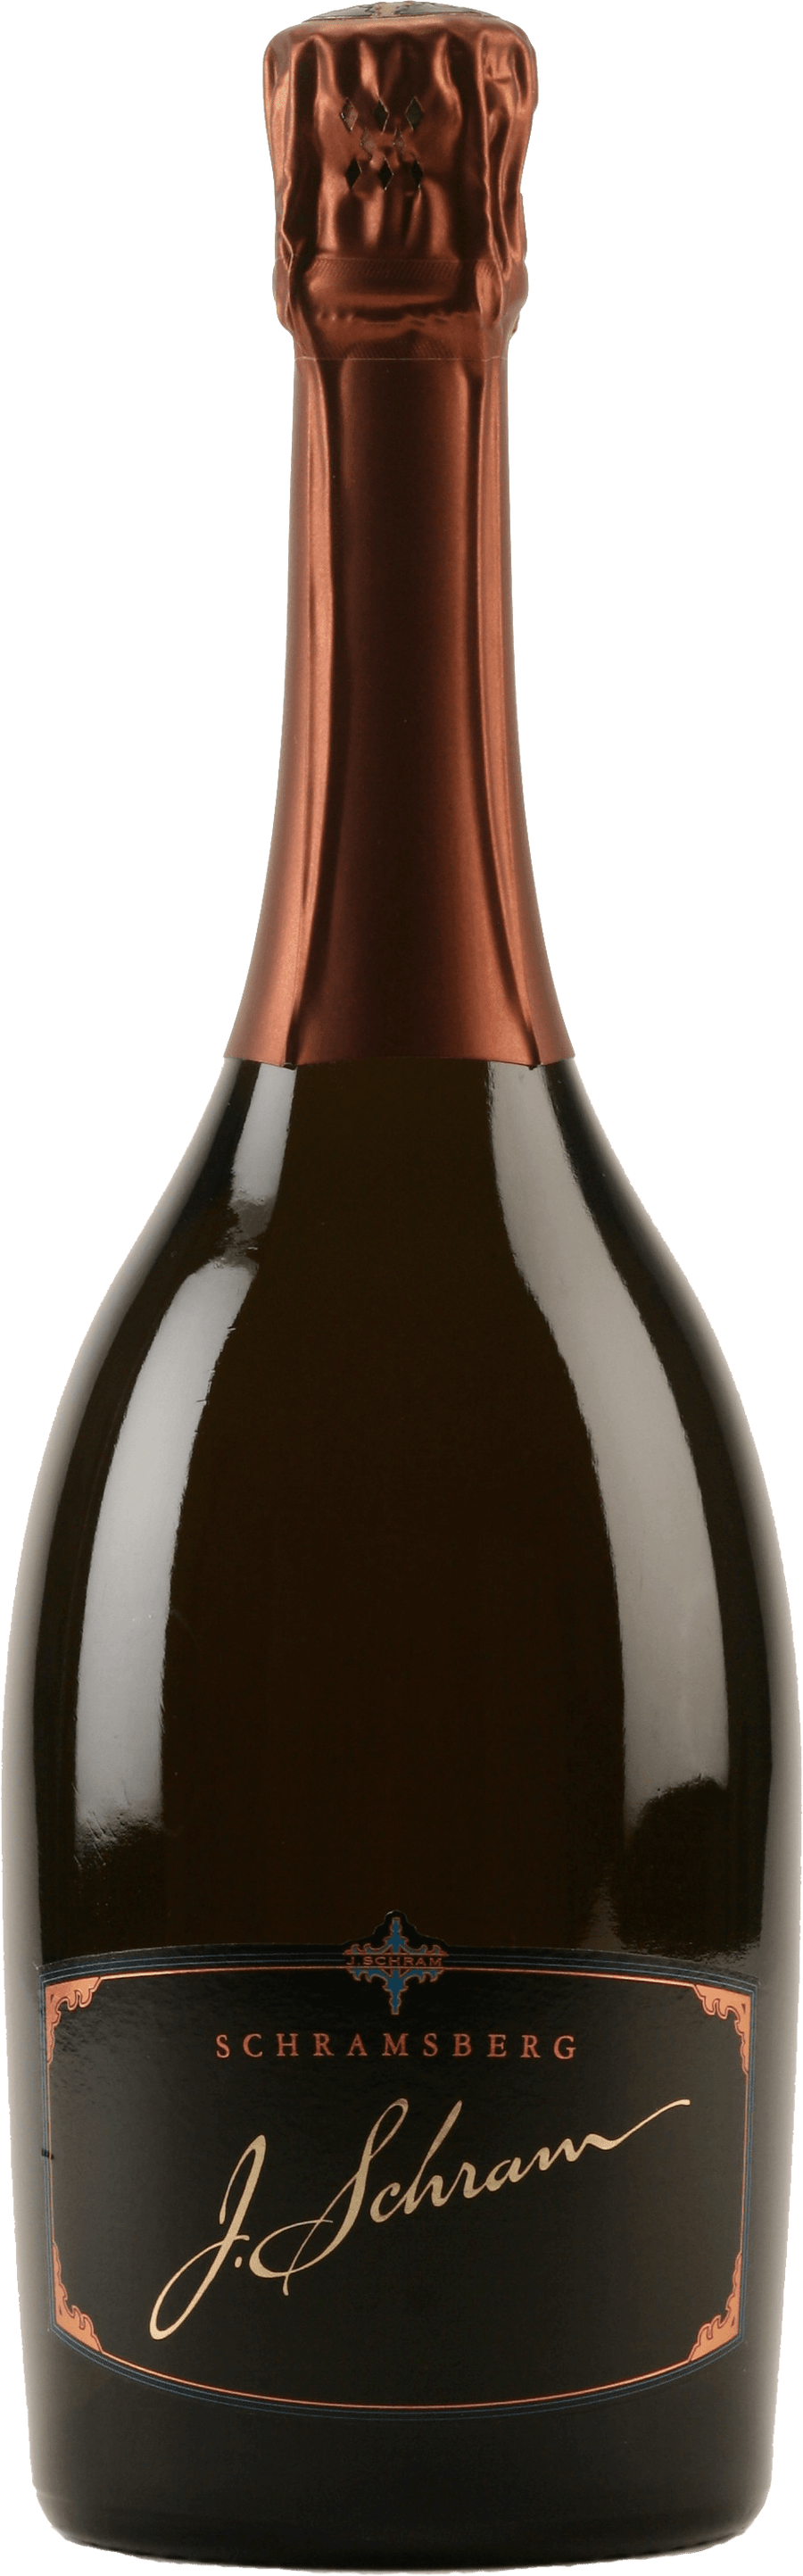 Schramsberg J. Schram Sparking Wine Gift Box 3 x 750ml $399 - Uncle Fossil  Wine&Spirits